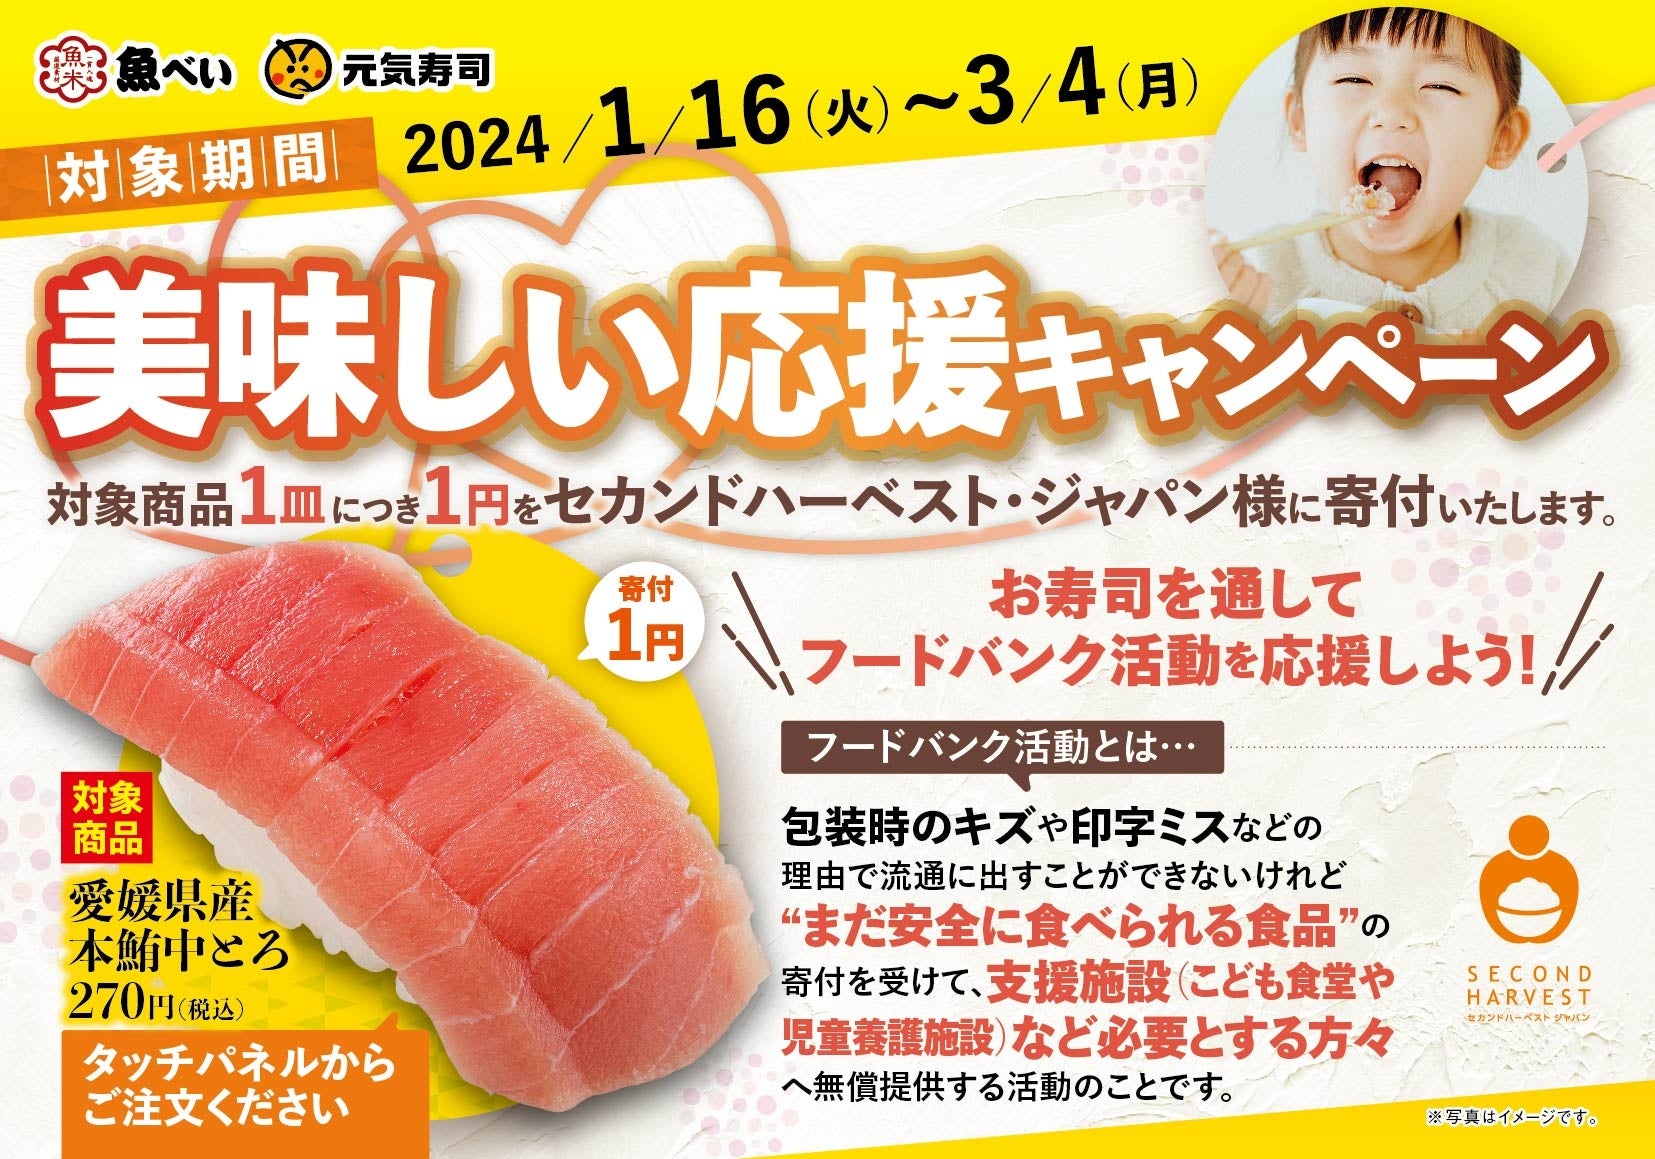 魚べい・元気寿司のお寿司を通してフードバンク活動を応援しよう！「本鮪中とろ」1皿のご注文ごとにフードバンク活動団体へ1円を寄付『美味しい応援キャンペーン』開催